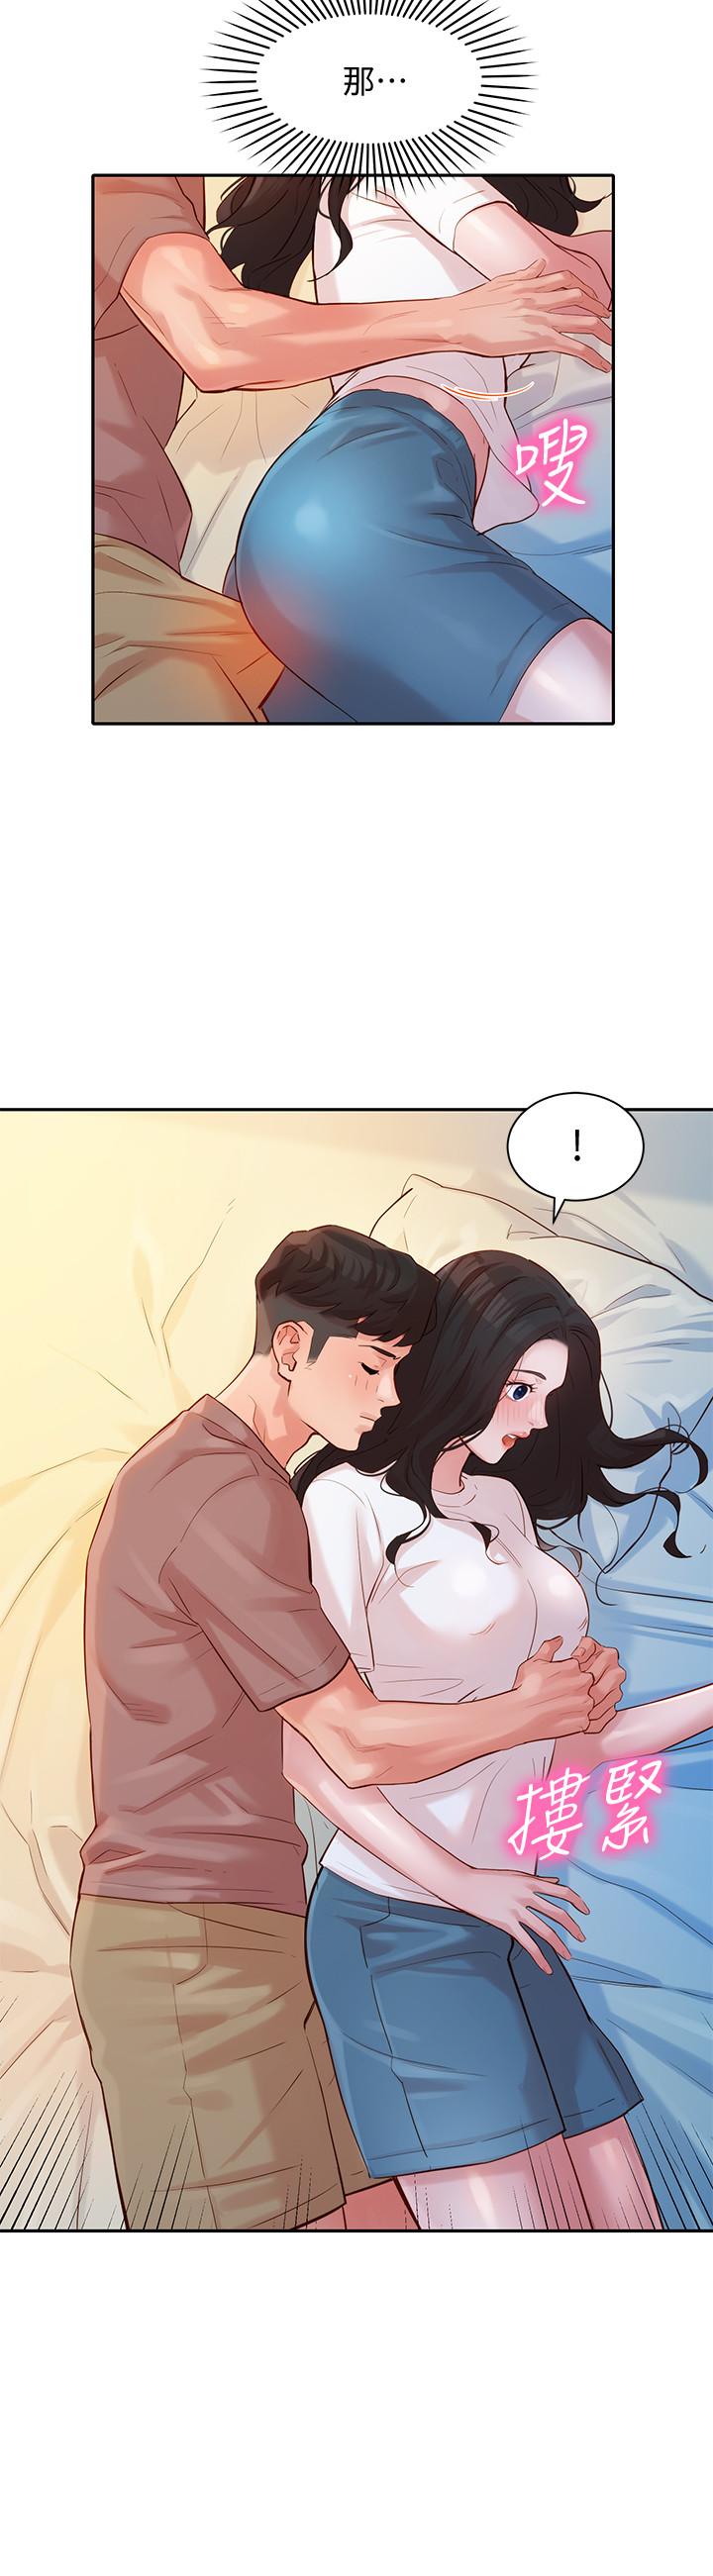 韩国污漫画 女神寫真 第17话-将欲望发洩在双臀之间 7